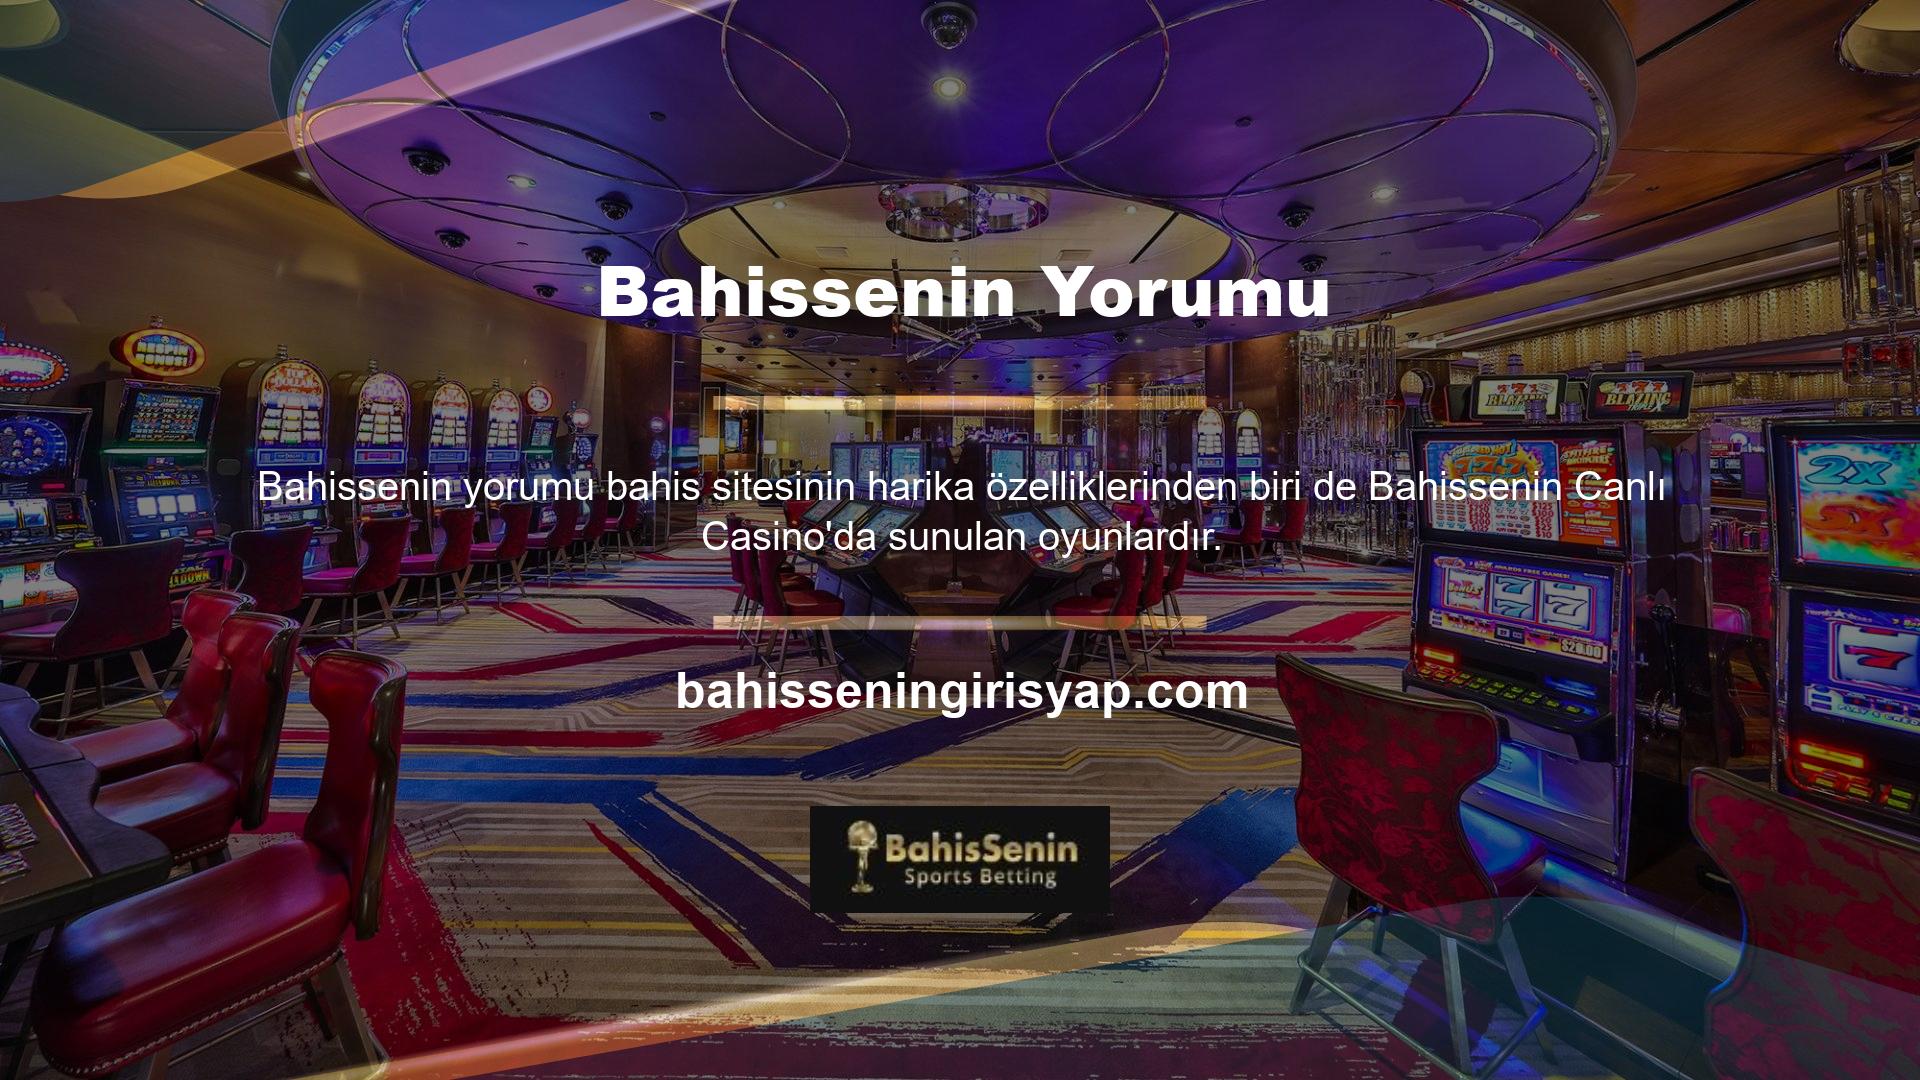 Site birçok yönden hızlı ve sistemli bir casino yapısı sunmaktadır